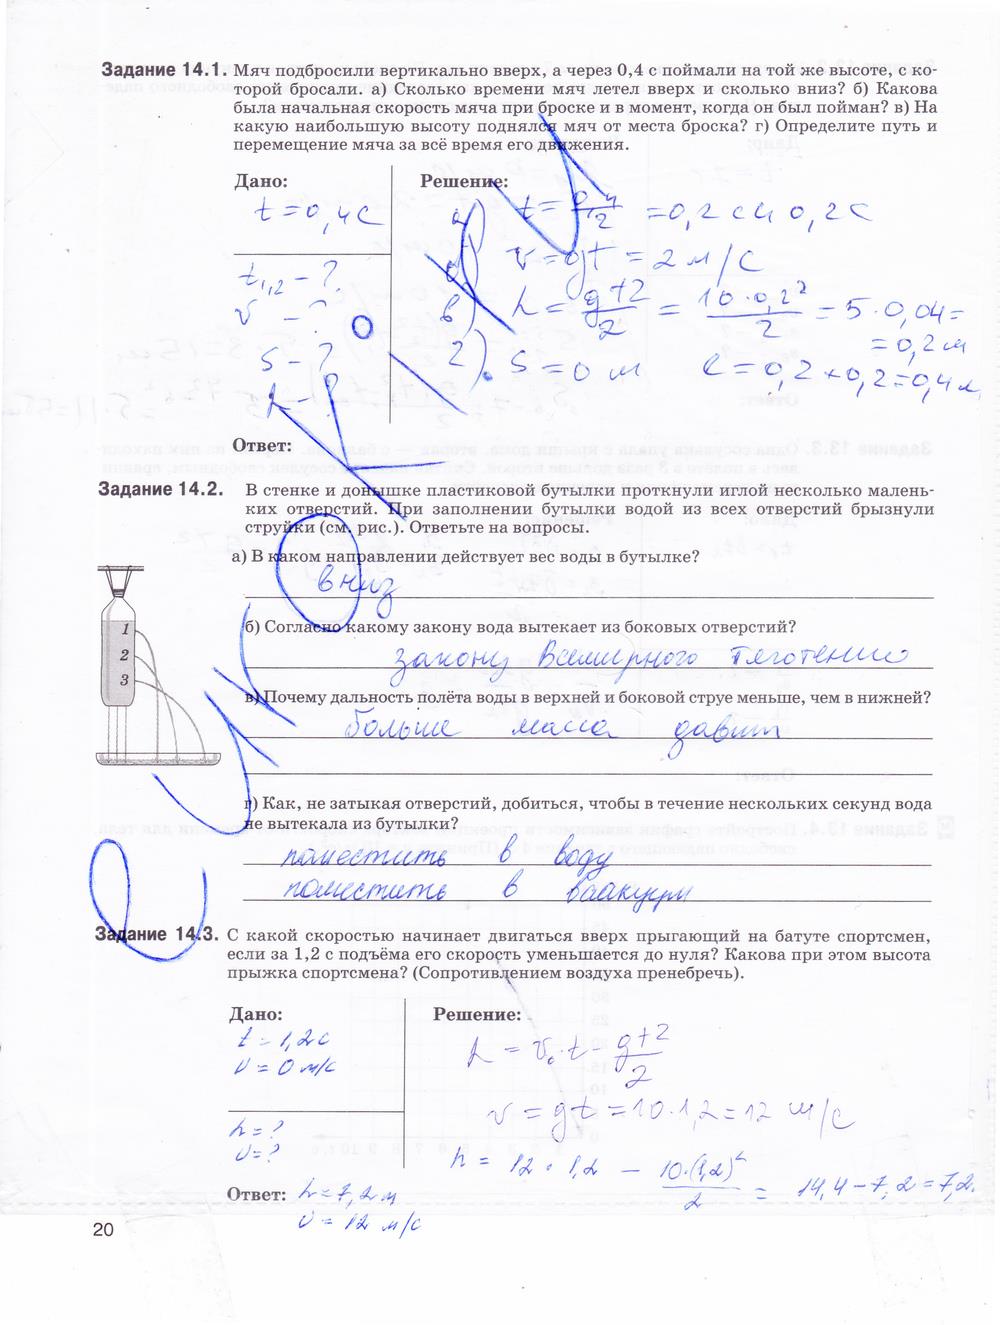 гдз 9 класс рабочая тетрадь страница 20 физика Гутник, Власова